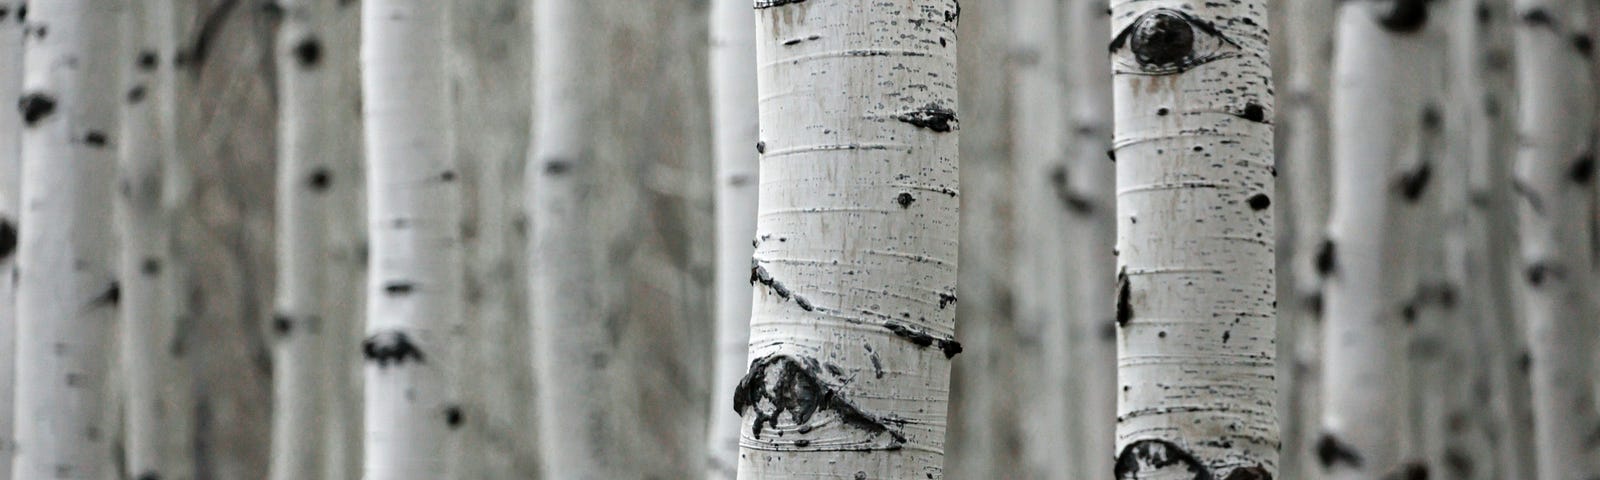 Copse of birches